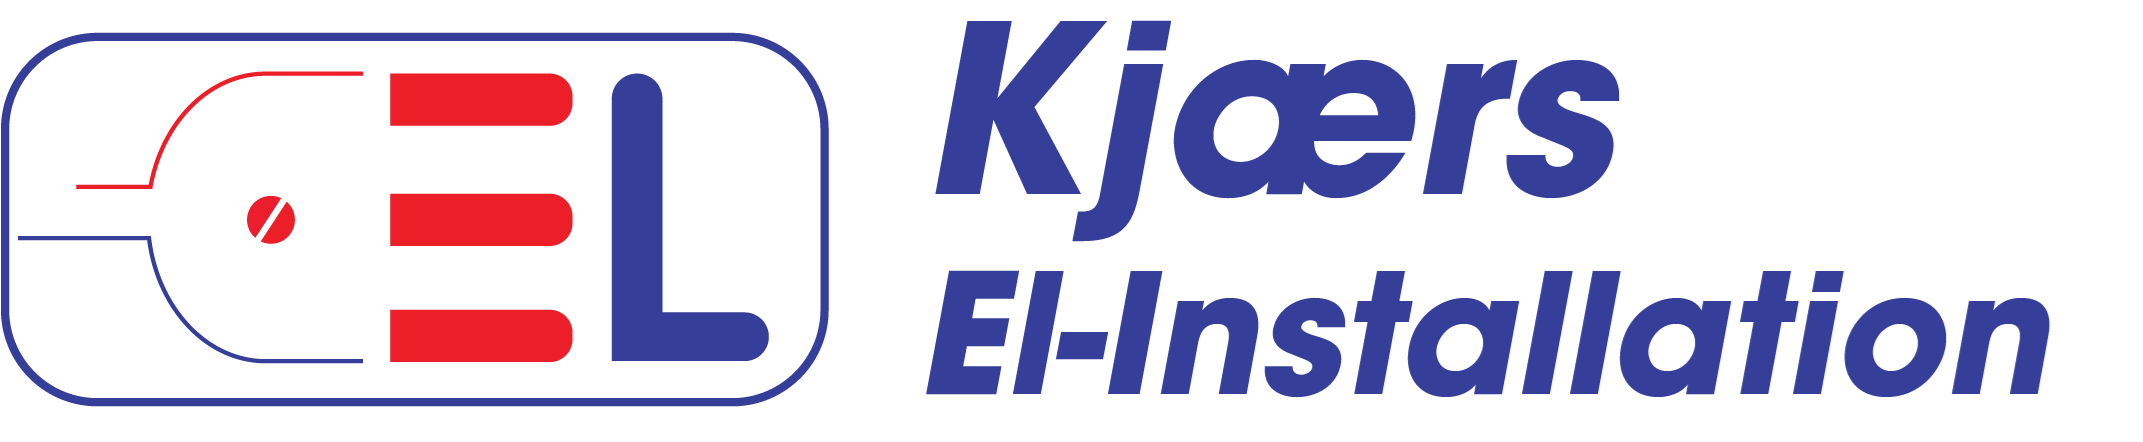 kjaers-el-http-logo